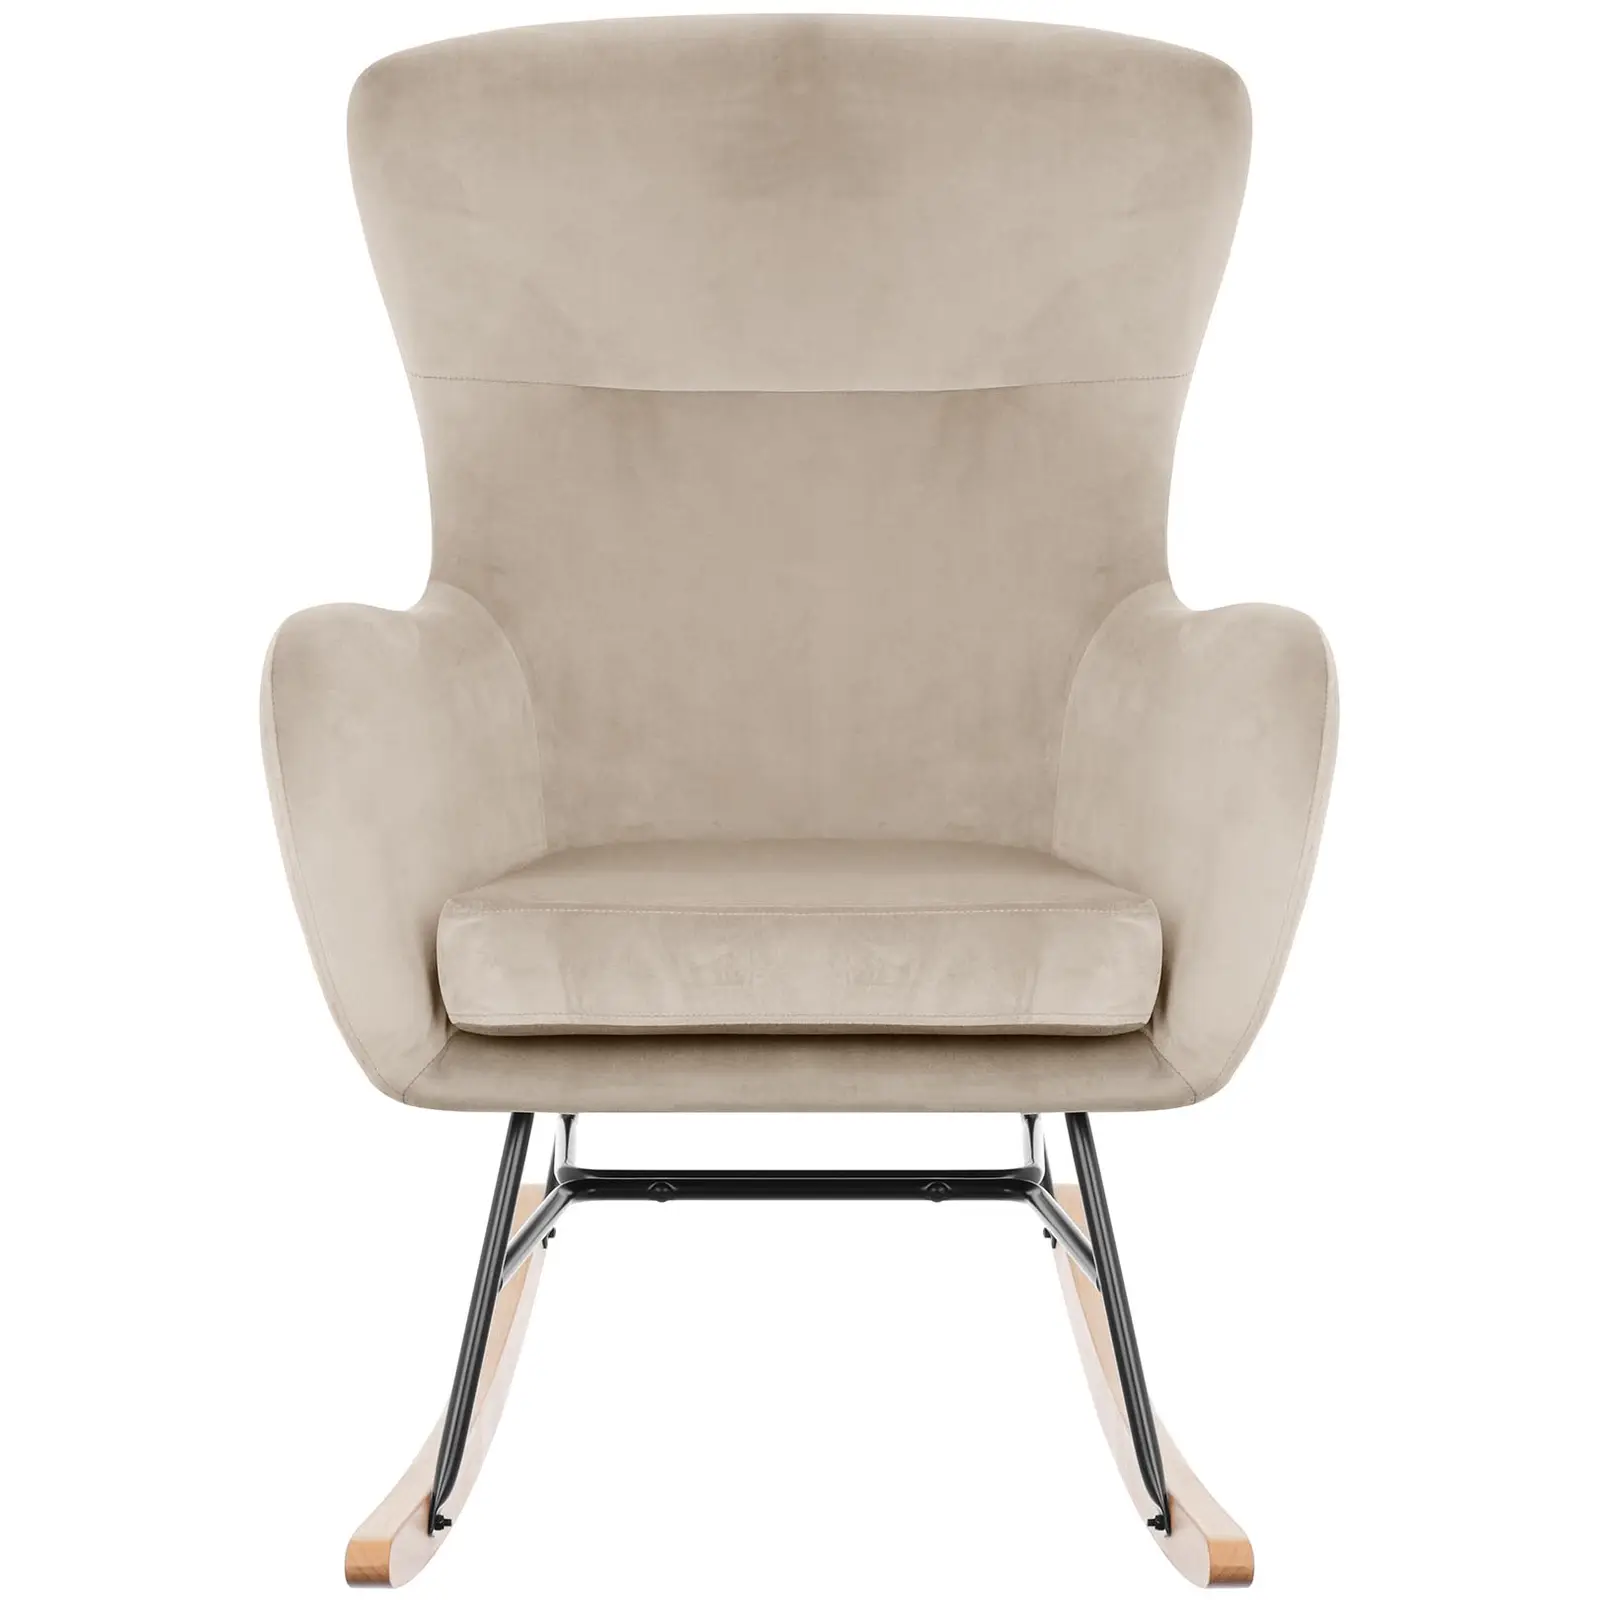 Factory second Rocking Chair - velvet - beech wood - grey